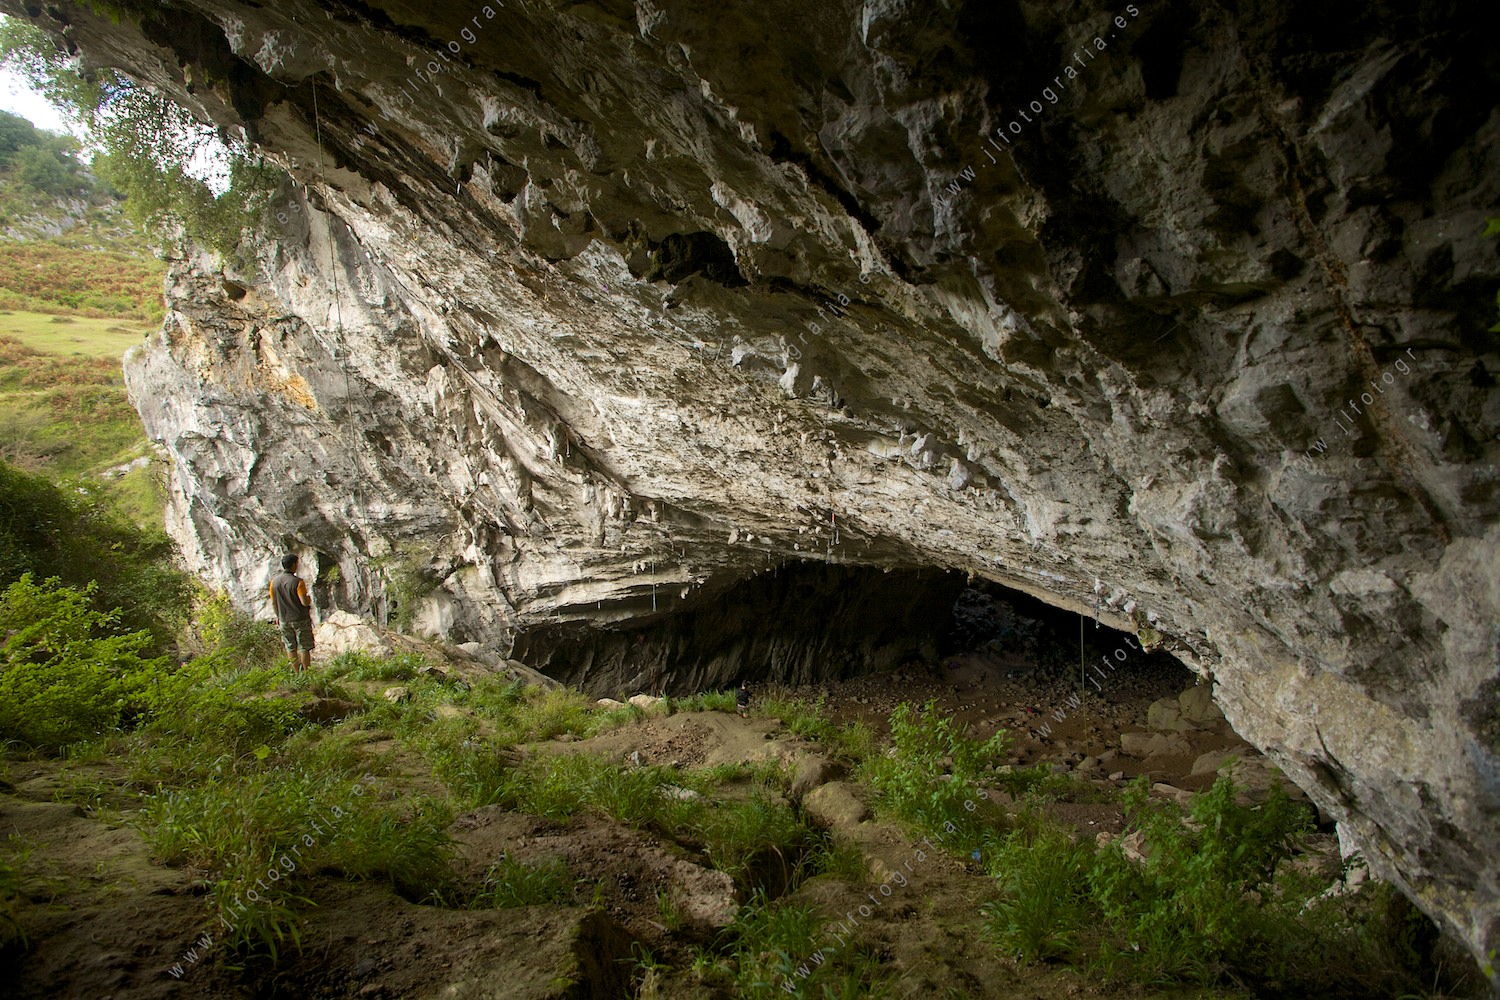 En la entrada de la gran cueva de Baltzola en Dima, es sobrecogedora la sensación de hormiga bajo esas paredes en nuestras cabezas.